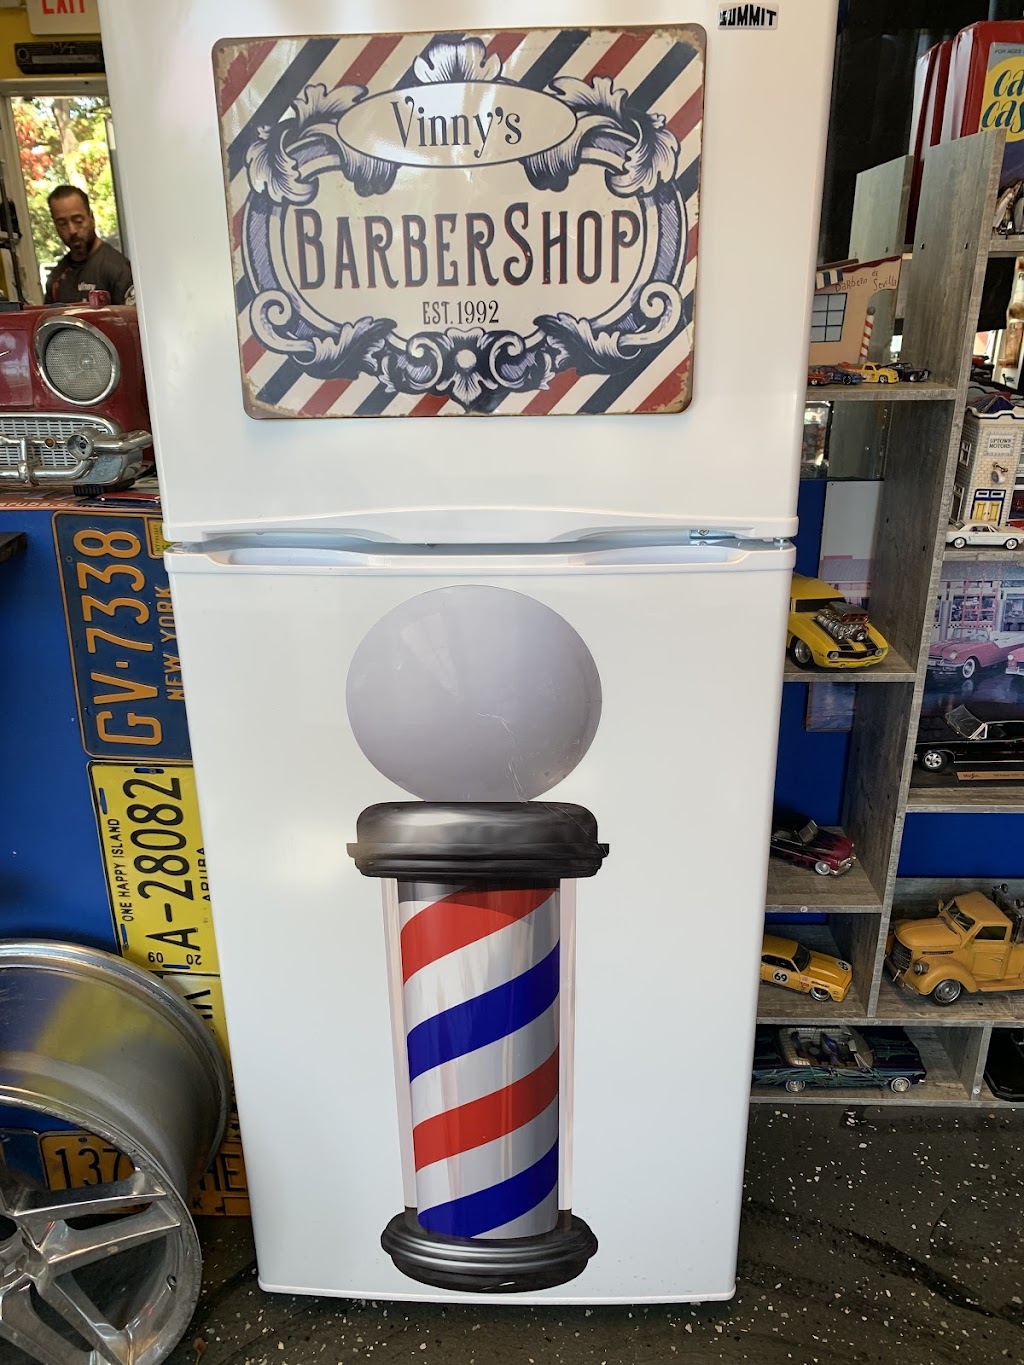 Vinnys Barber Shop Inc | 1671 NY-112, Coram, NY 11727 | Phone: (631) 476-5862